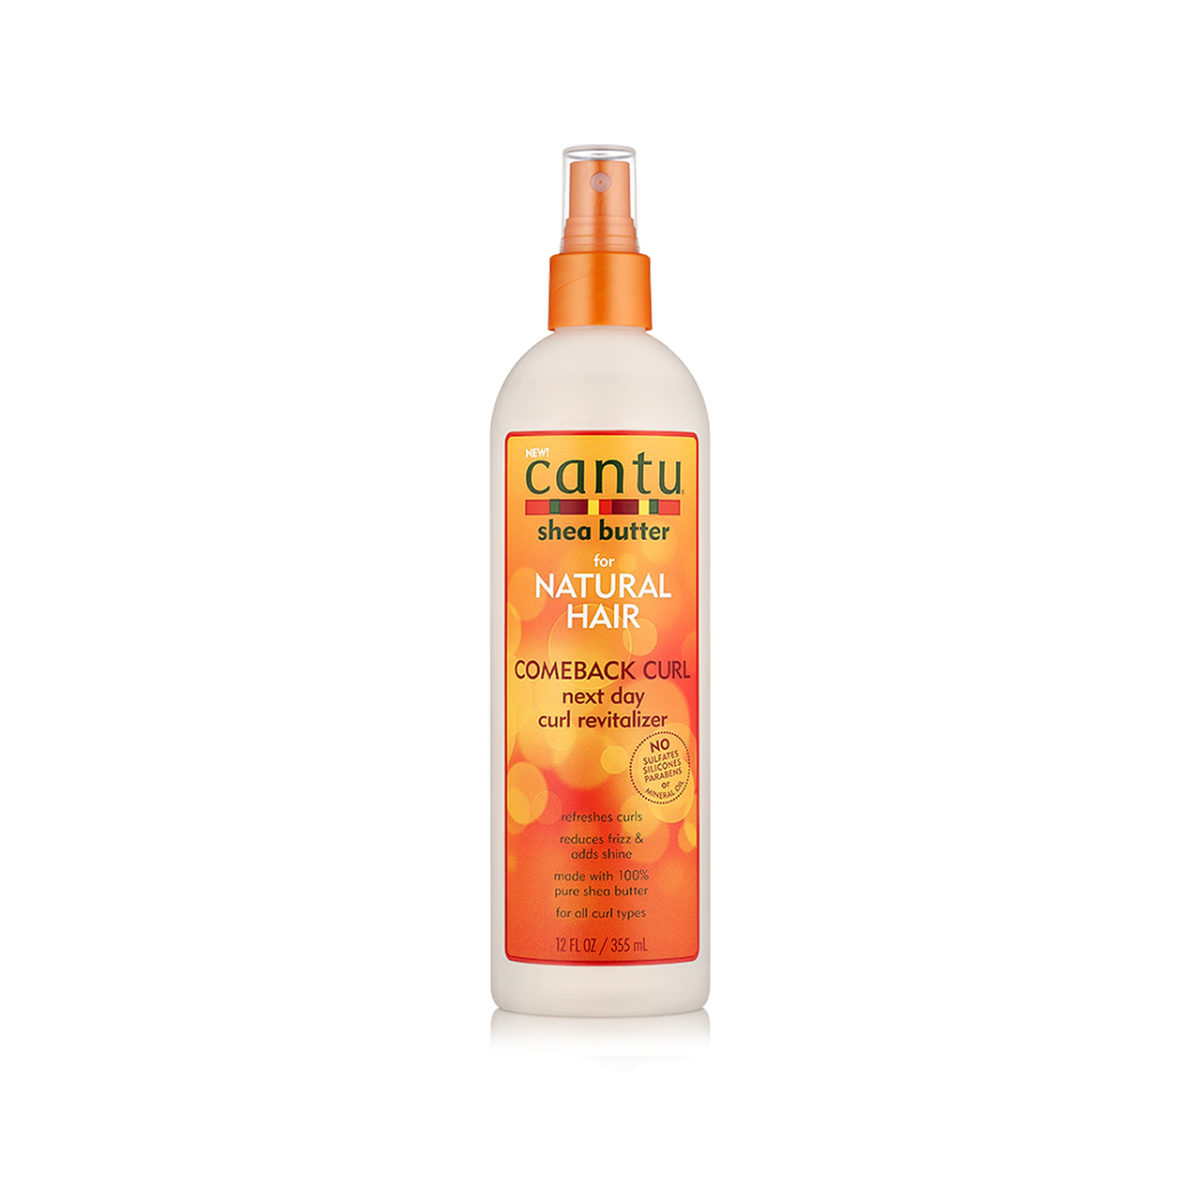 Cantu - Comeback Curl Next Day Curl Revitalizer